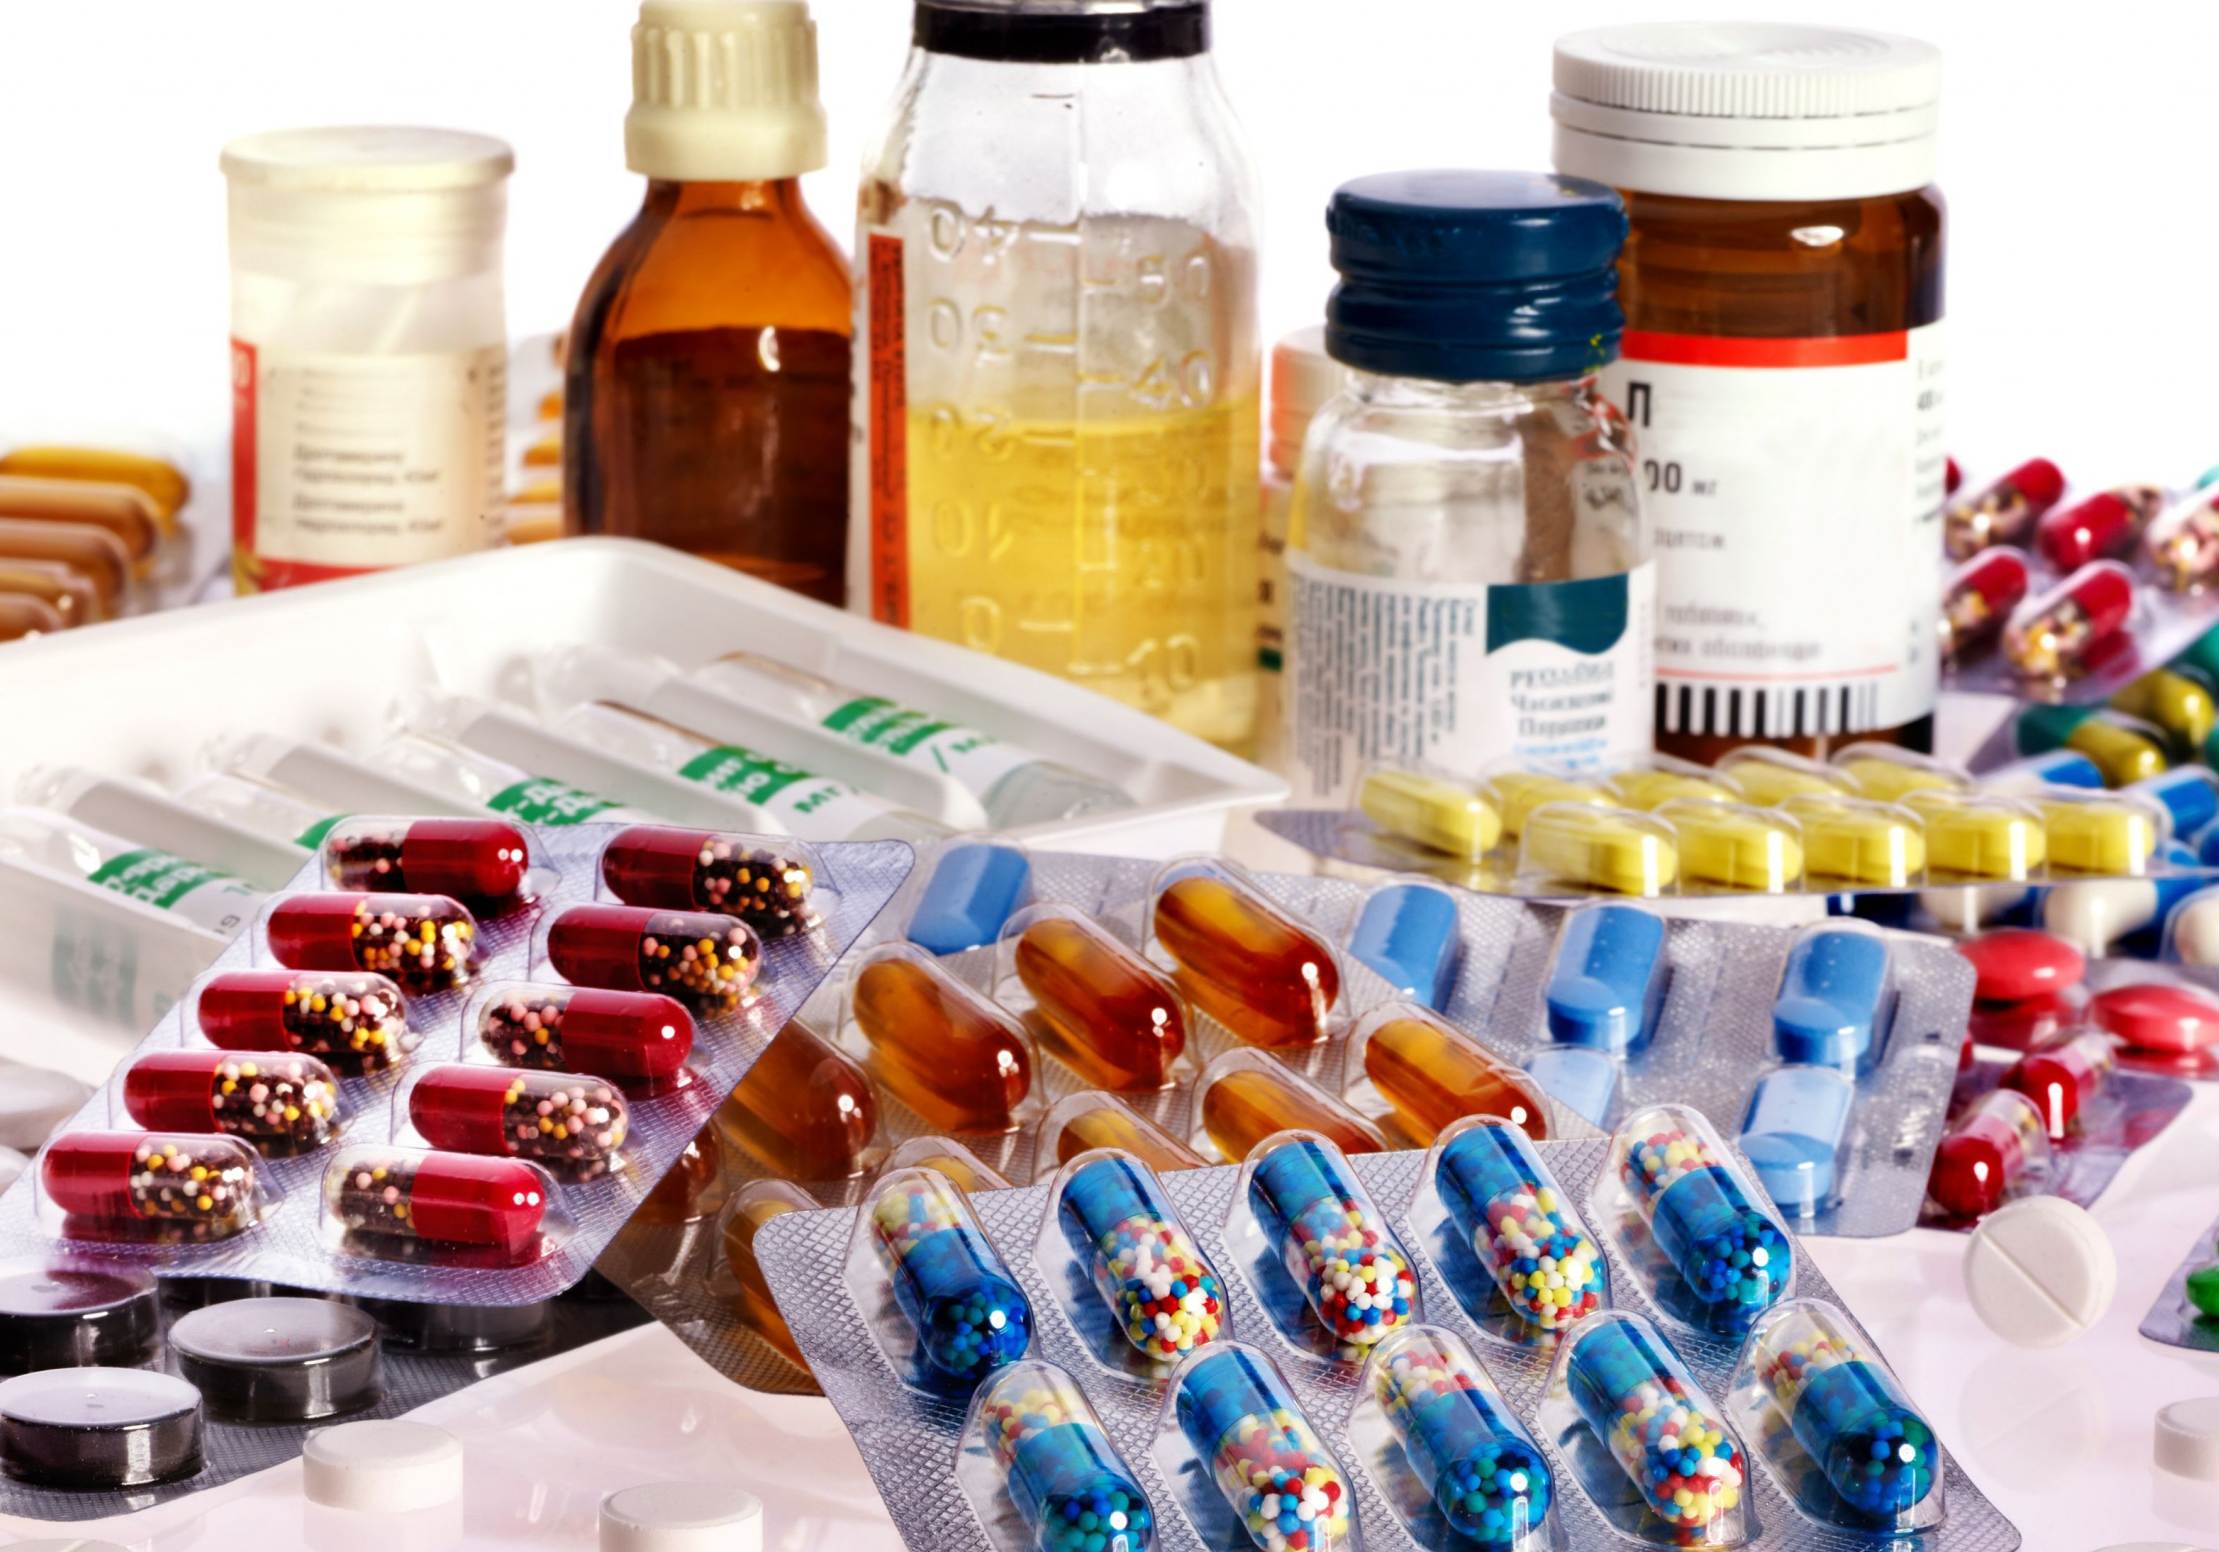 В ЕАЭС одобрен перечень лекарств, рекомендованных к производству в союзе